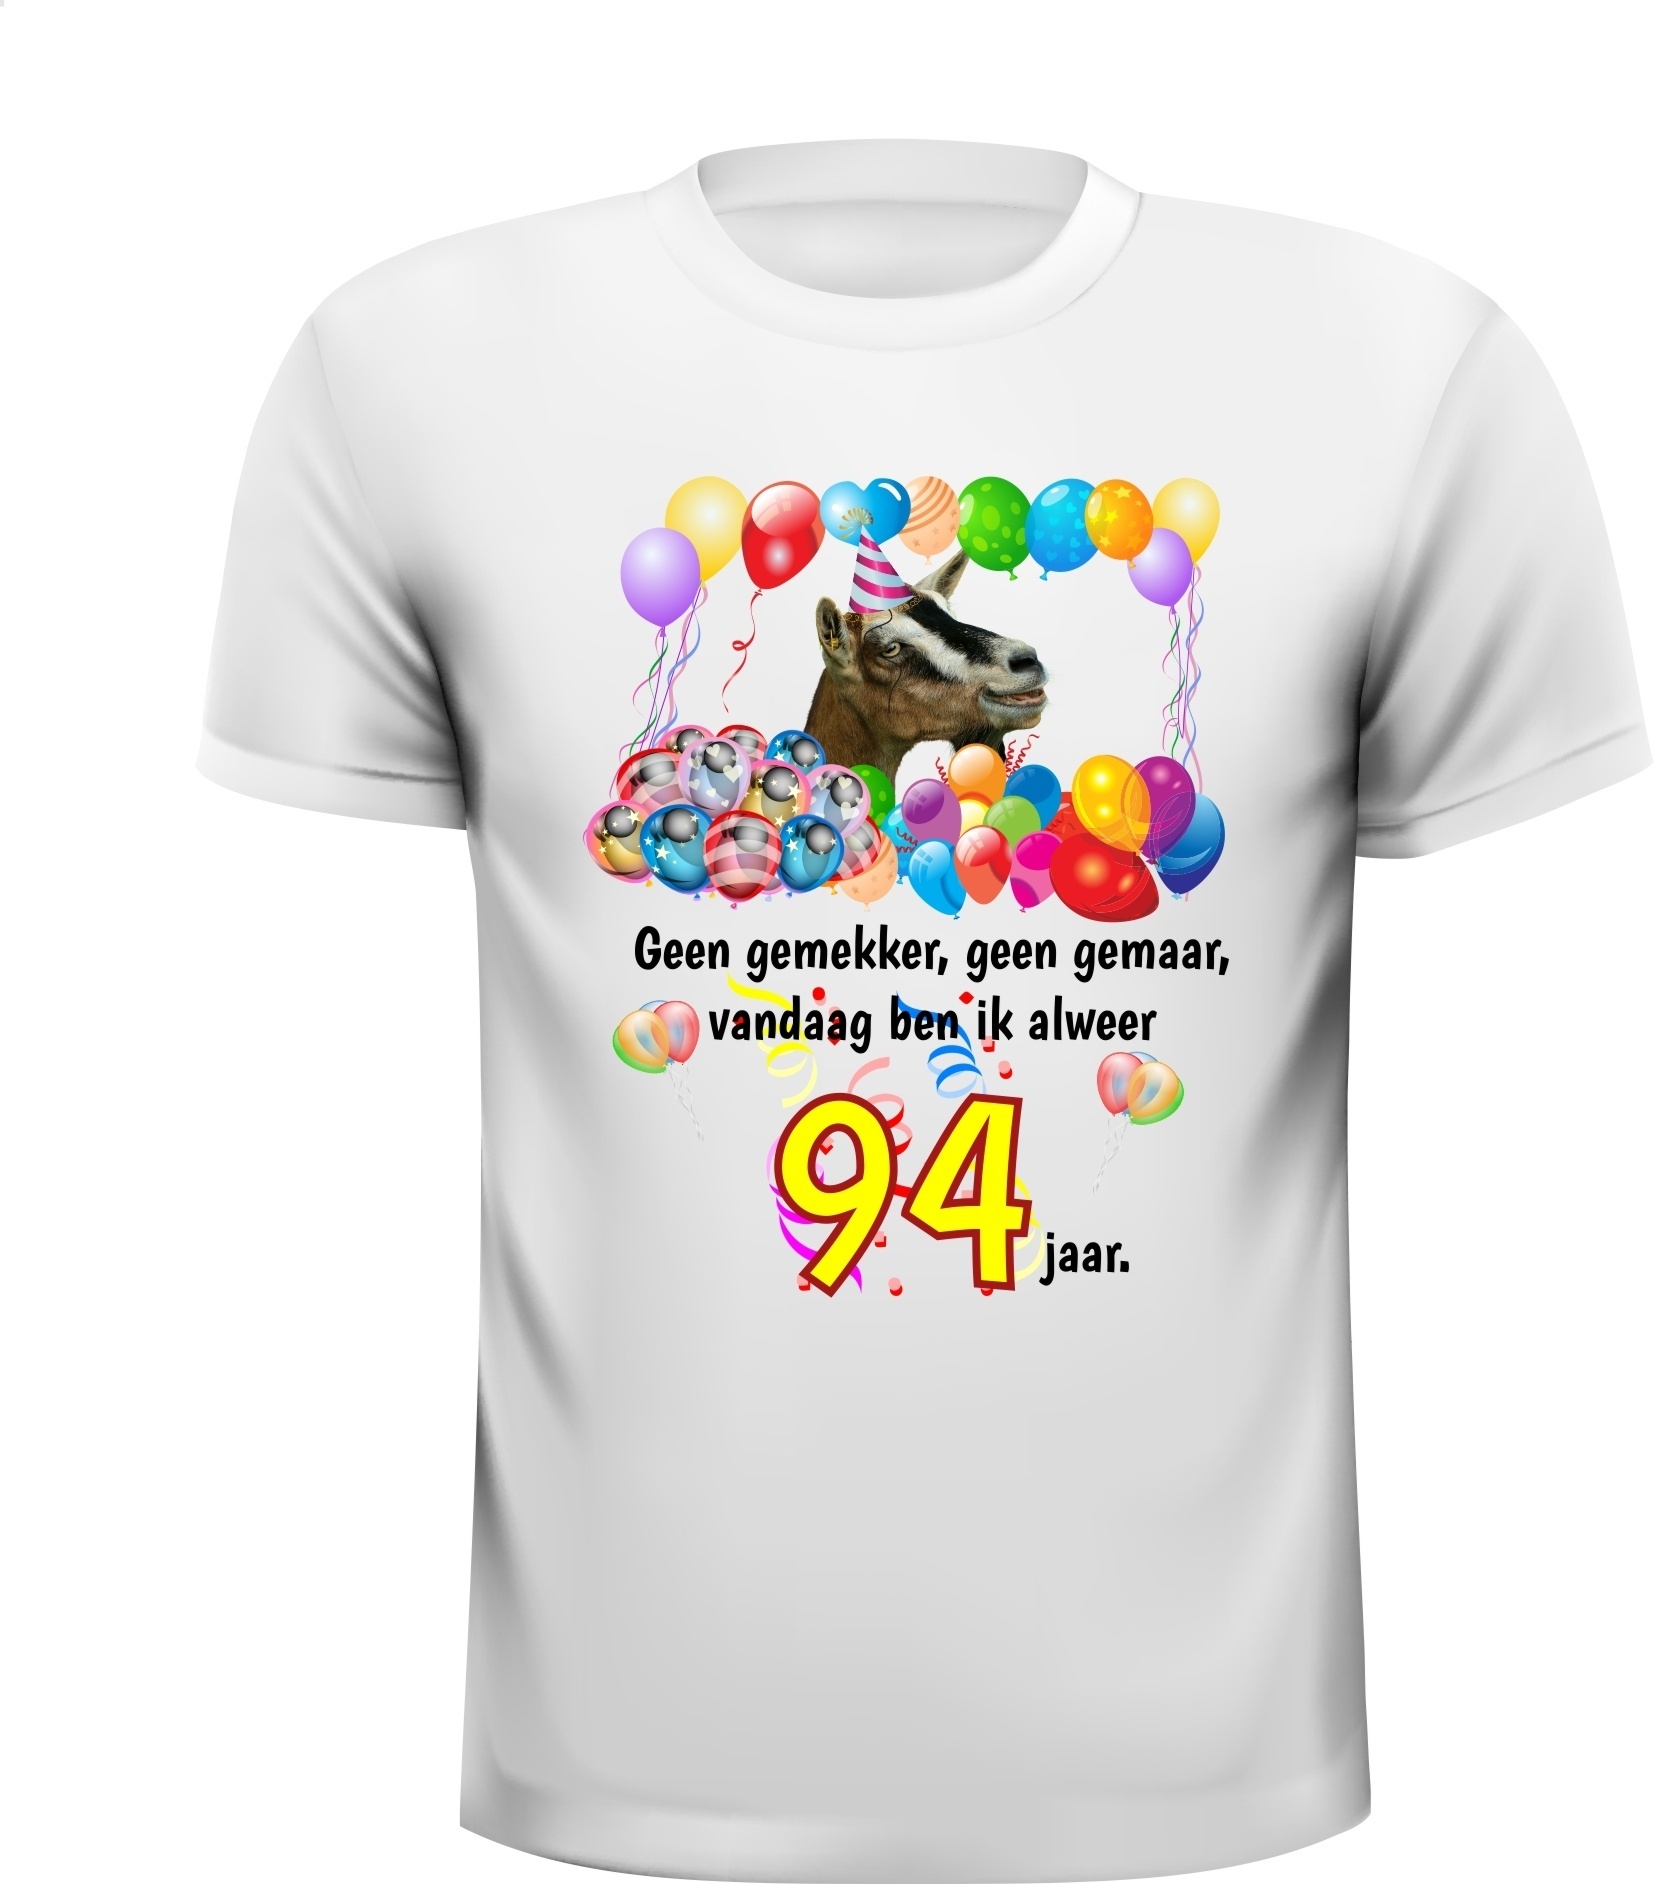 Feestelijk verjaardag shirt voor een jarige van de leeftijd van 94 jaar